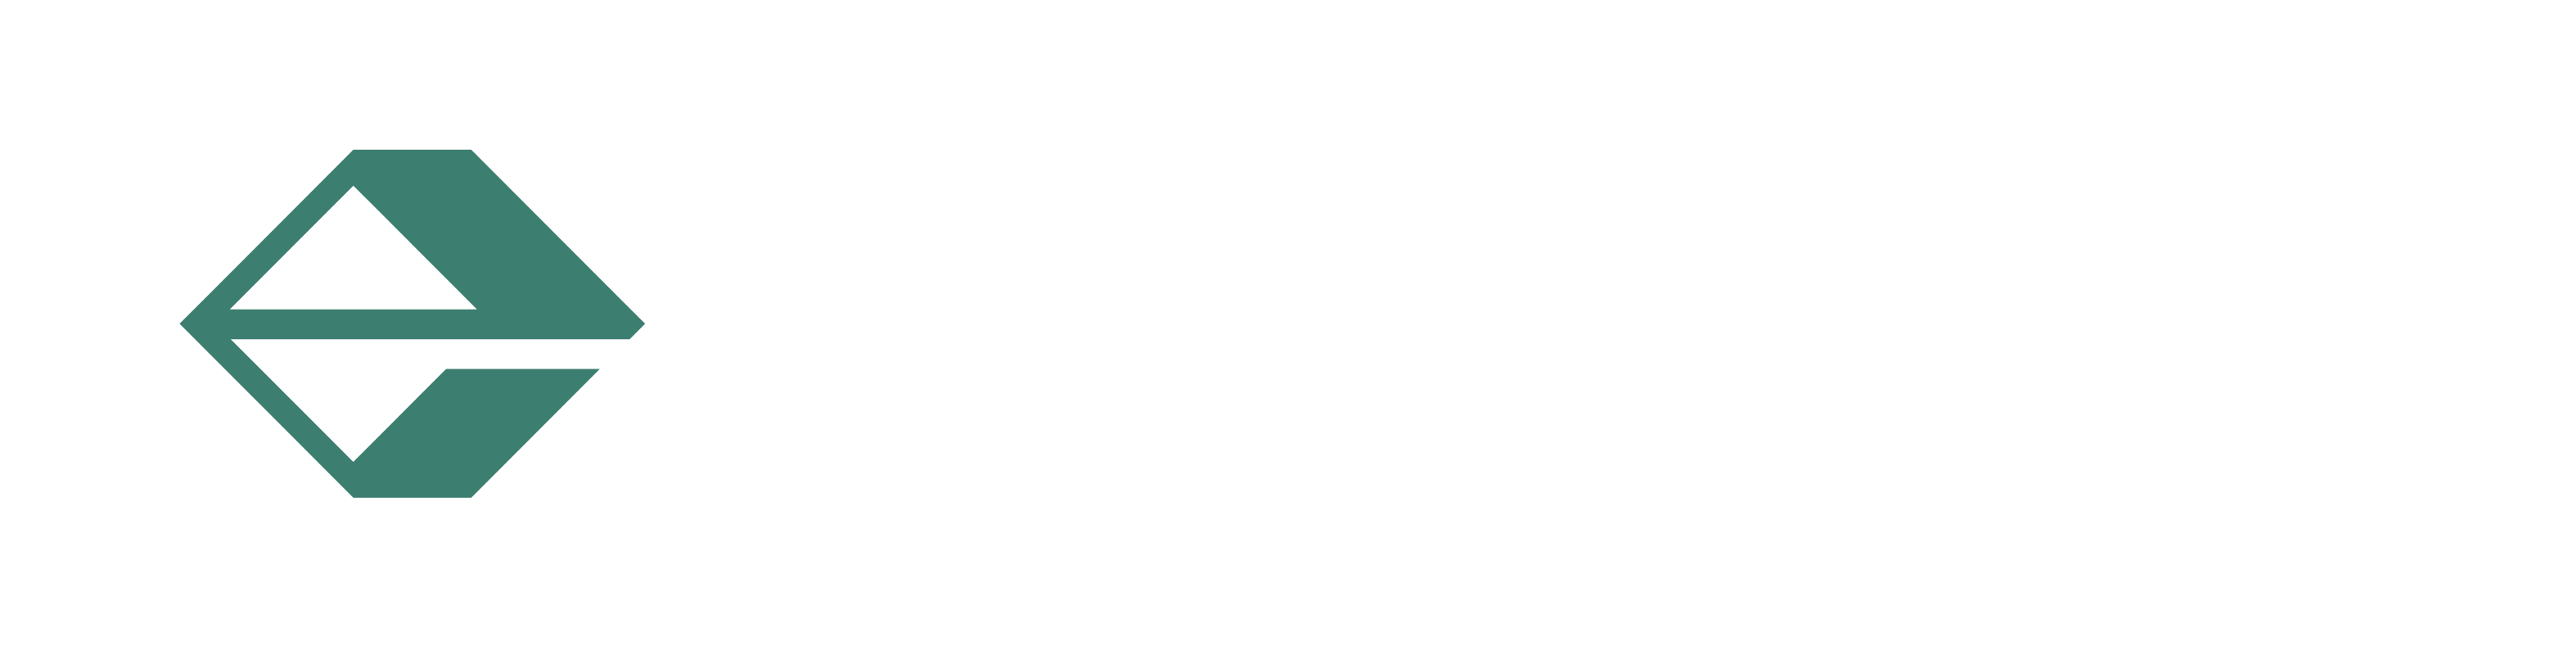 Exercio logo with text